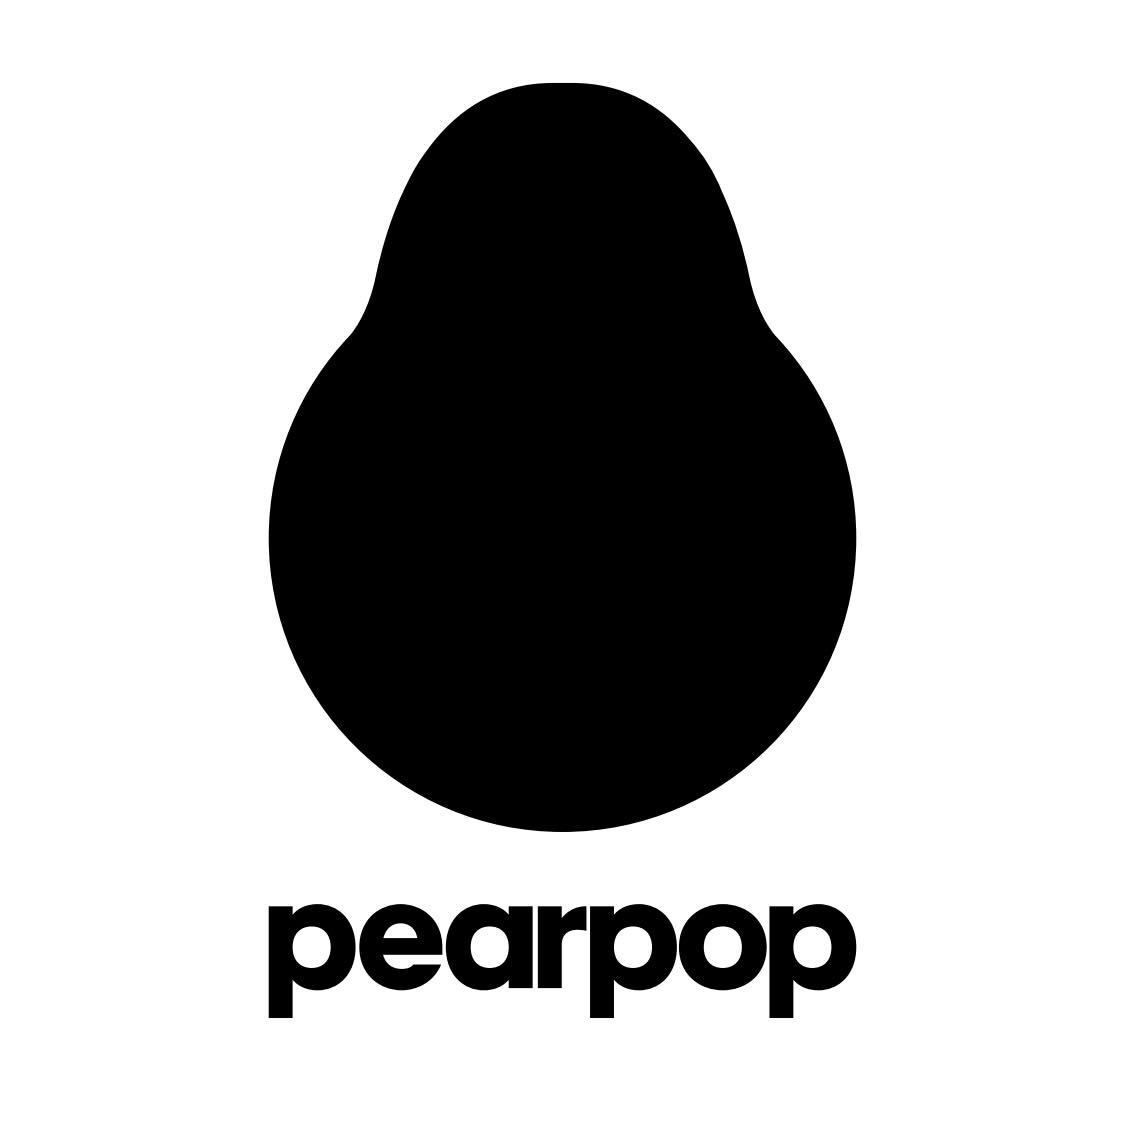 Pearpoplogo3.jpg